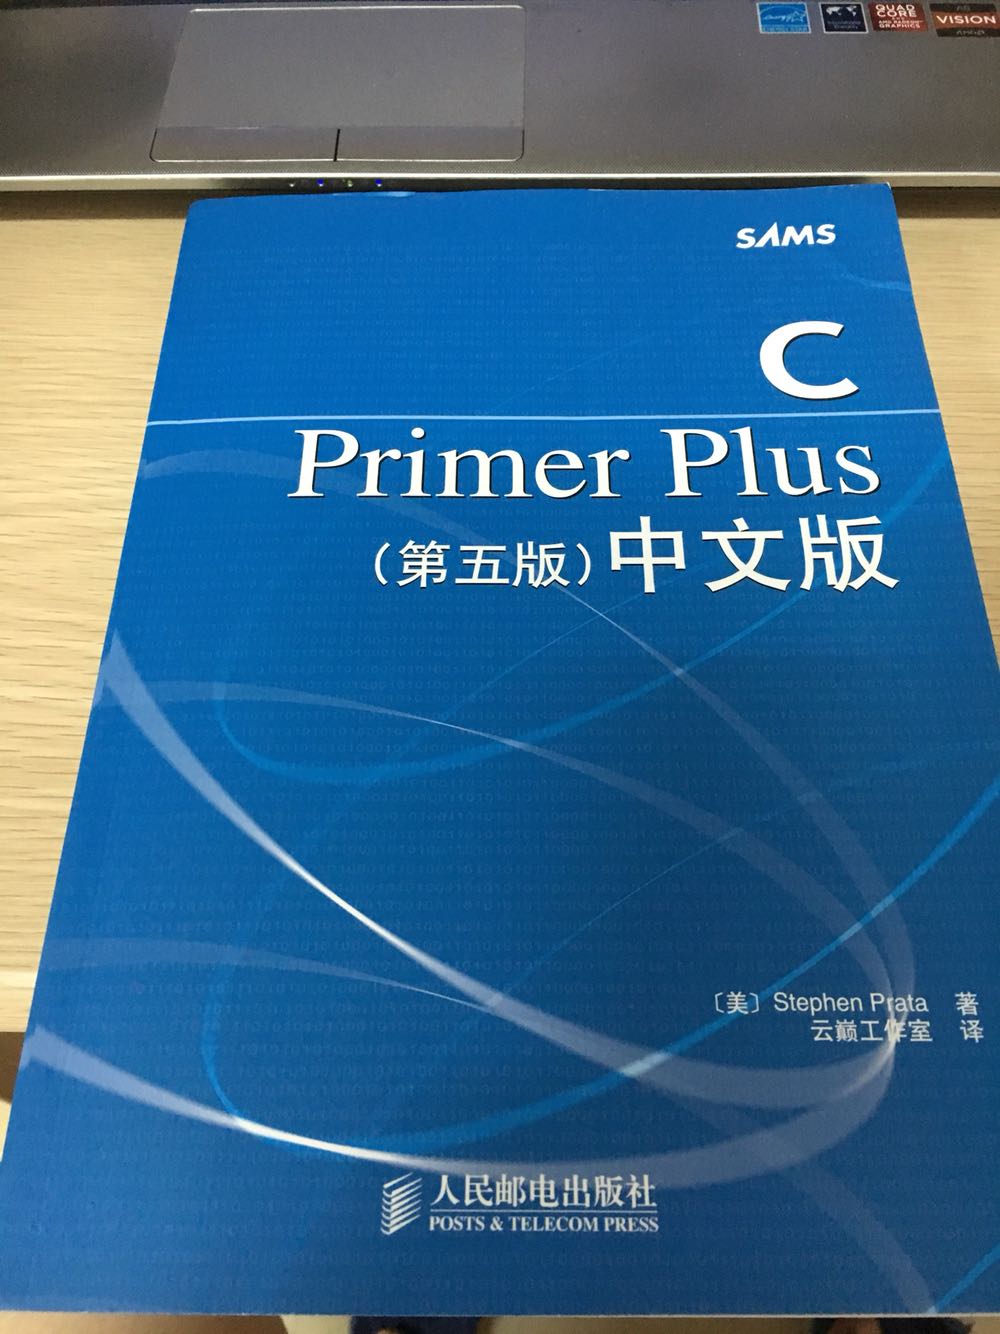 开始认真的学习C语言了，这本书是同学还有导师推荐我看的，C Primer Plus 简称CPP，对于一个刚起步的程序员来说还是很合适的，内容详实，通俗易懂。值得购买！